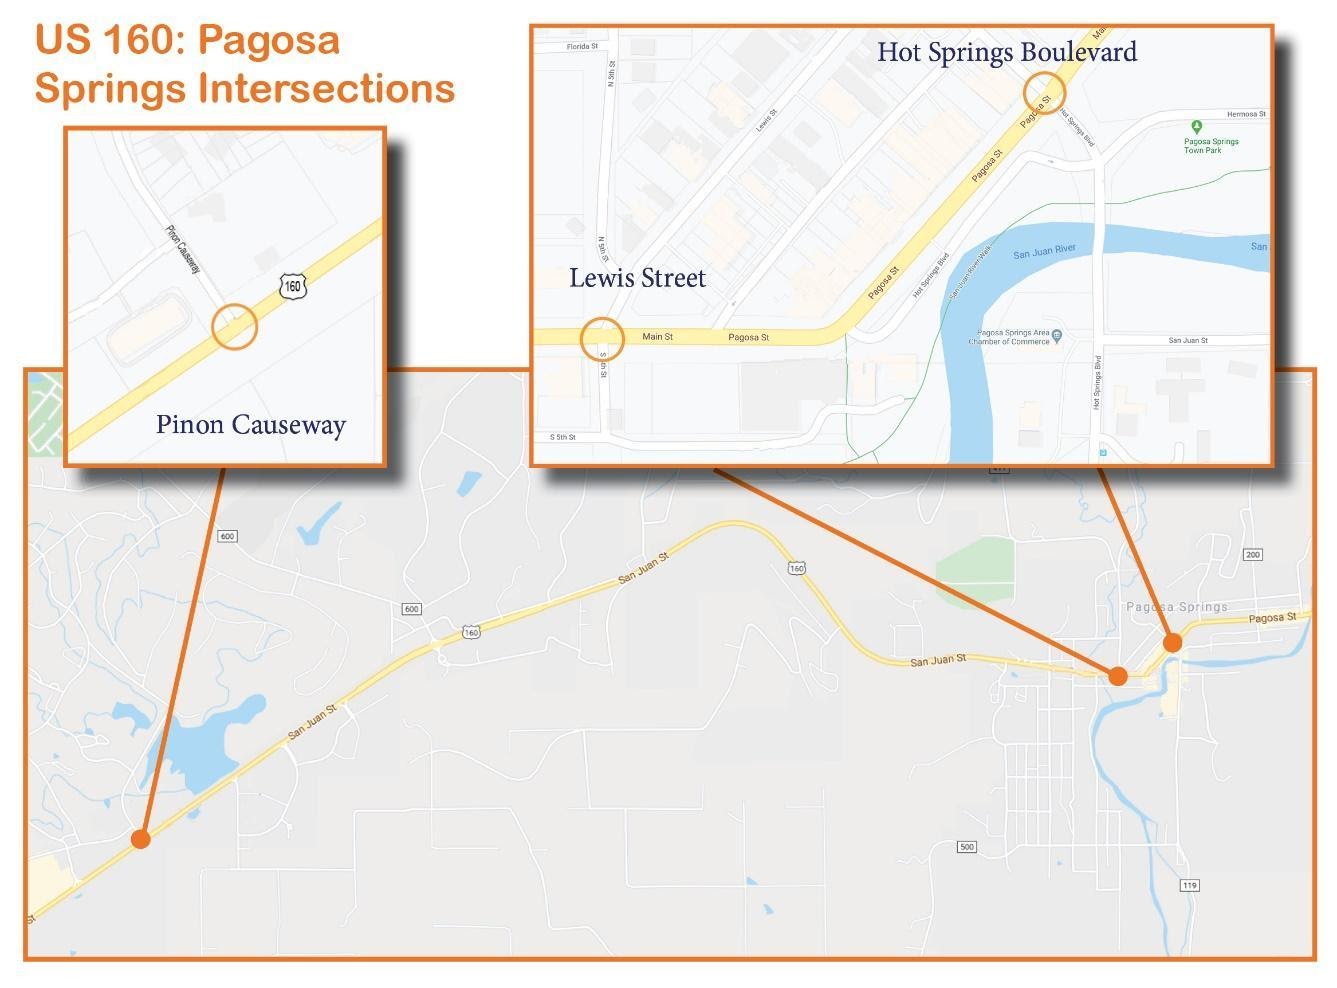 US 160 Pagosa Signal Improvements_MAP.jpg detail image